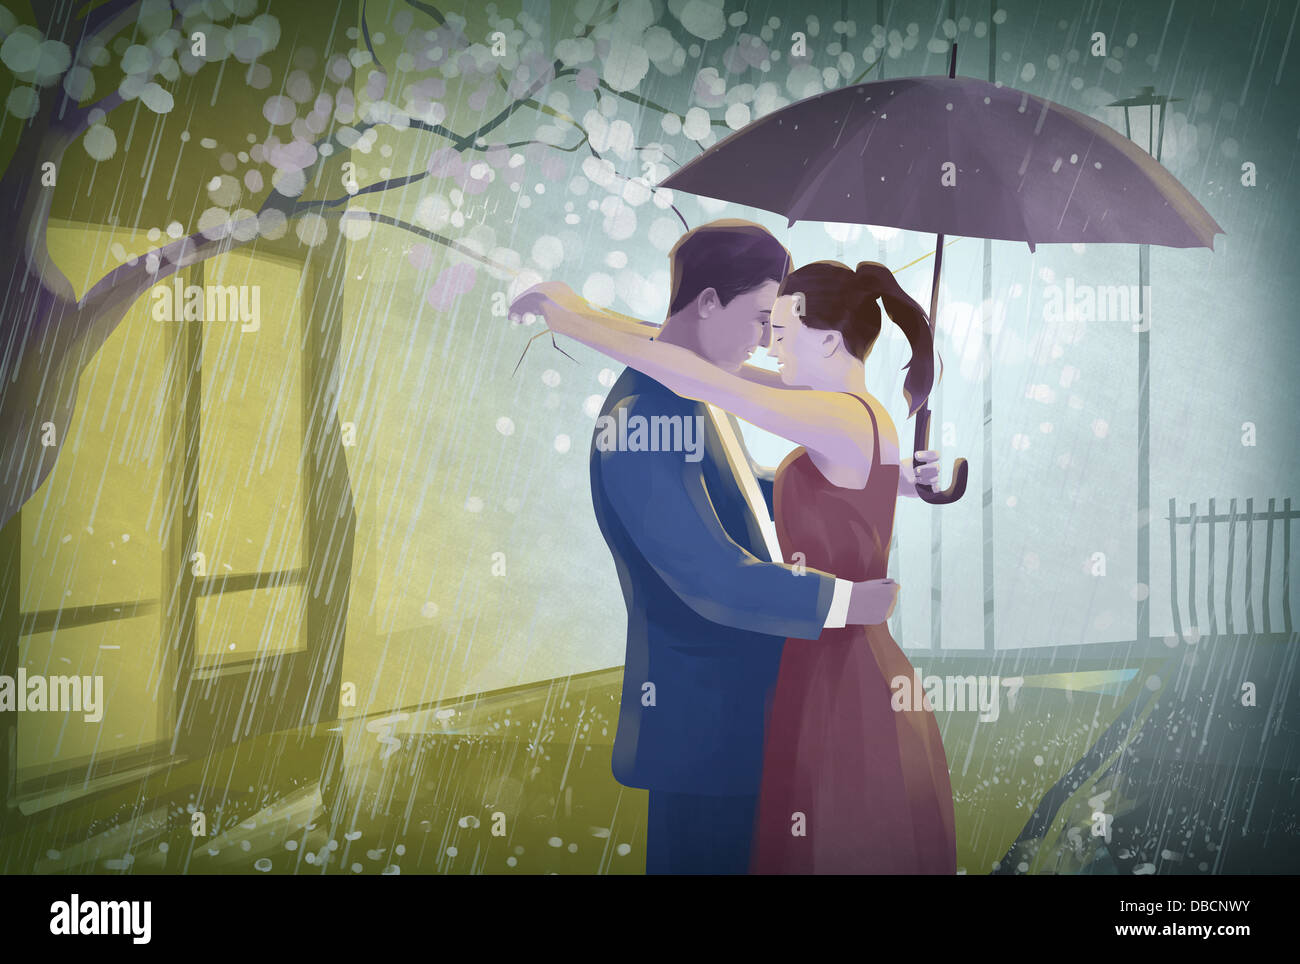 Illustration de couple avec un parapluie qui englobe dans la pluie Banque D'Images